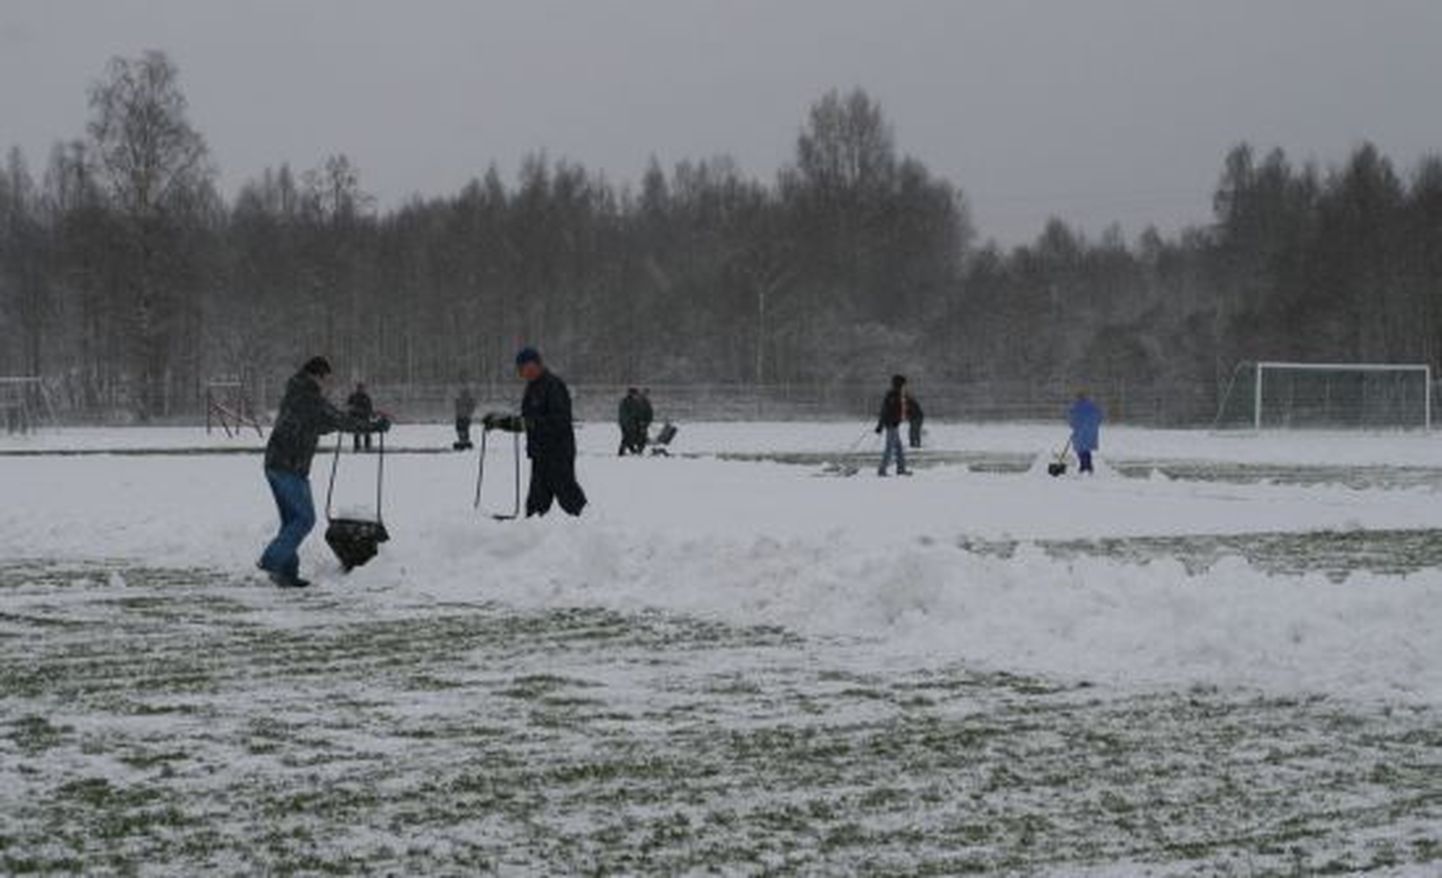 Keerulised lumeolud segasid jalgpallimängimist ka 2008. aasta novembris, kui linnameeskond võitles üleminekumängudel Pärnu Vaprusega koha eest meistriliigas.